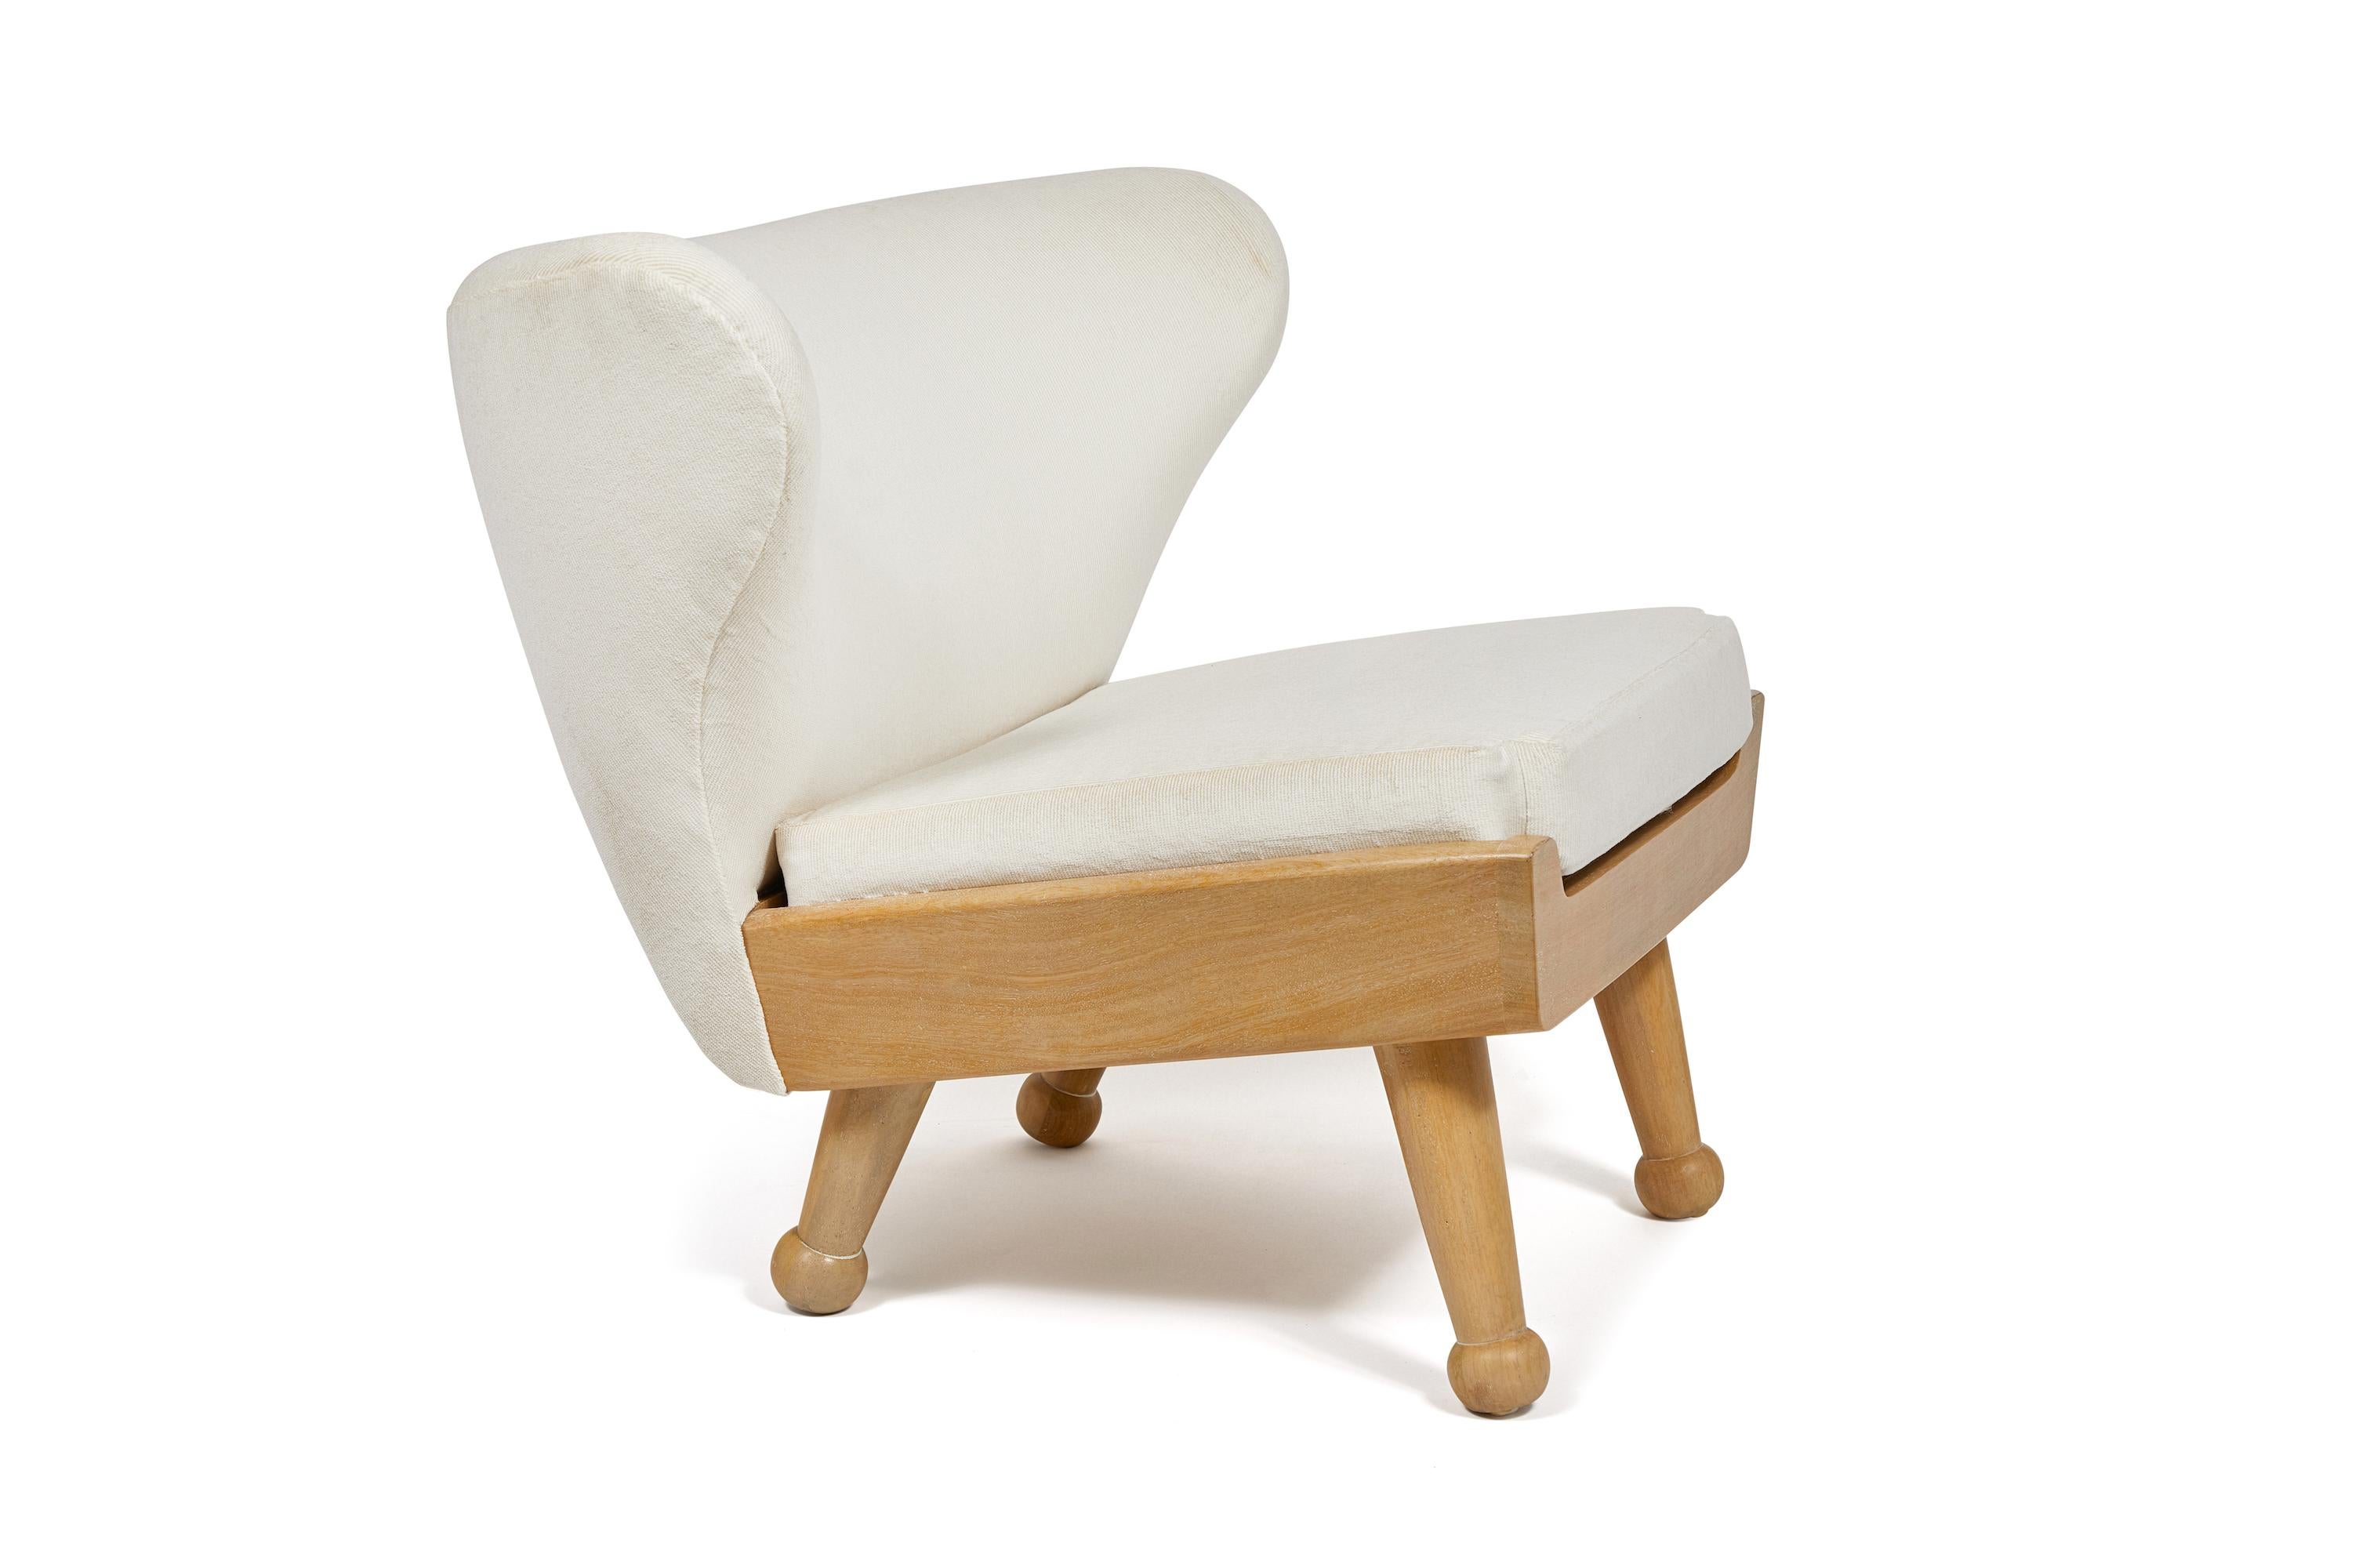 Ein Loungesessel mit Flügeln und niedrigem Profil aus unserer Hayworth Collection. Die in Los Angeles gefertigten Sitzbänke mit ihren weichen Kurven und dem robusten Fundament aus Holz für den Außenbereich sind ein Stück für den Innen- und